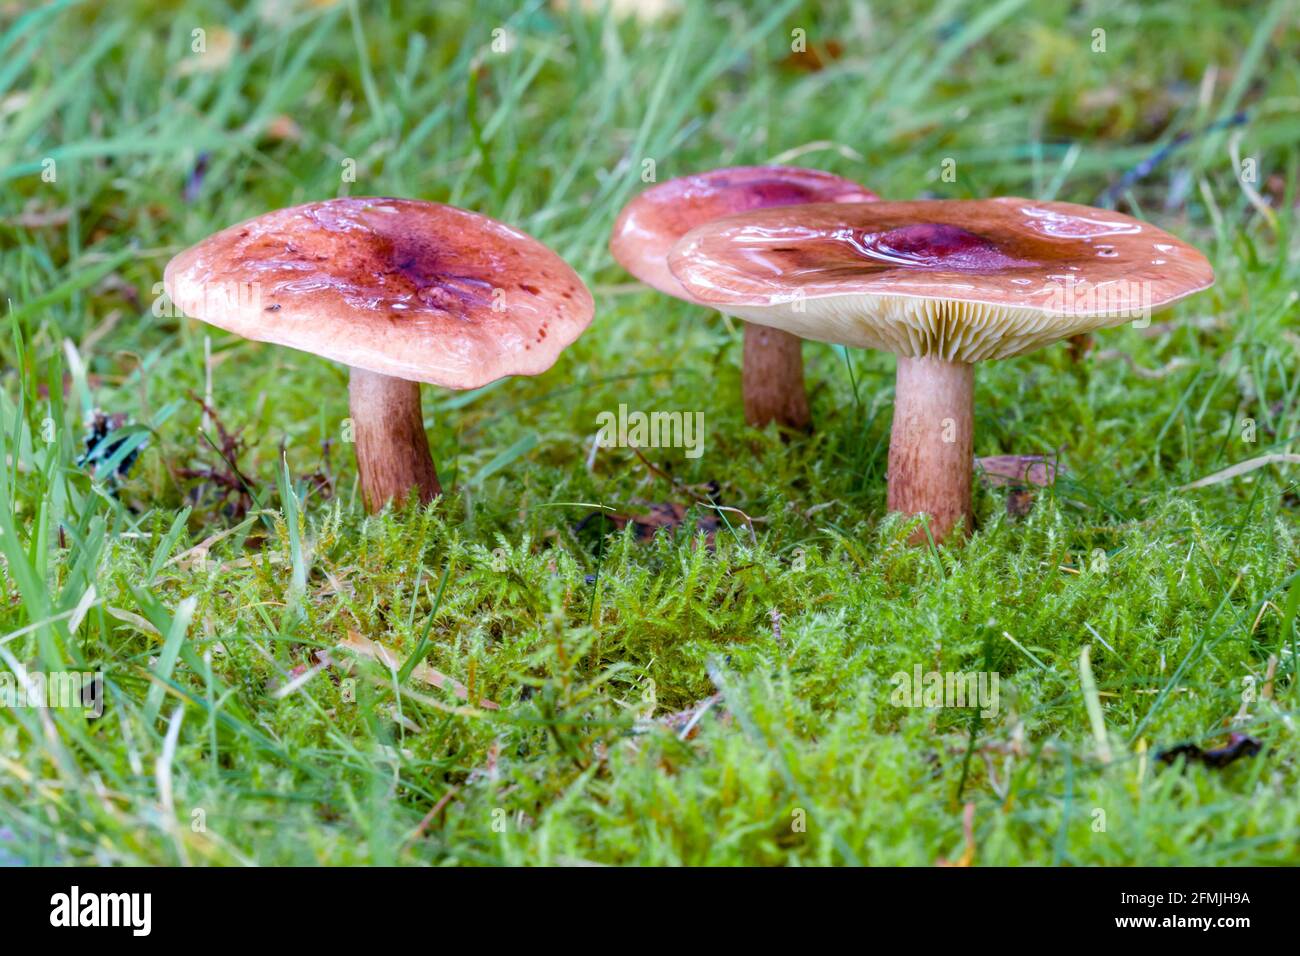 Herald di fungo invernale Hygroforus hypothejus che cresce su erba in Le Highlands della Scozia Foto Stock